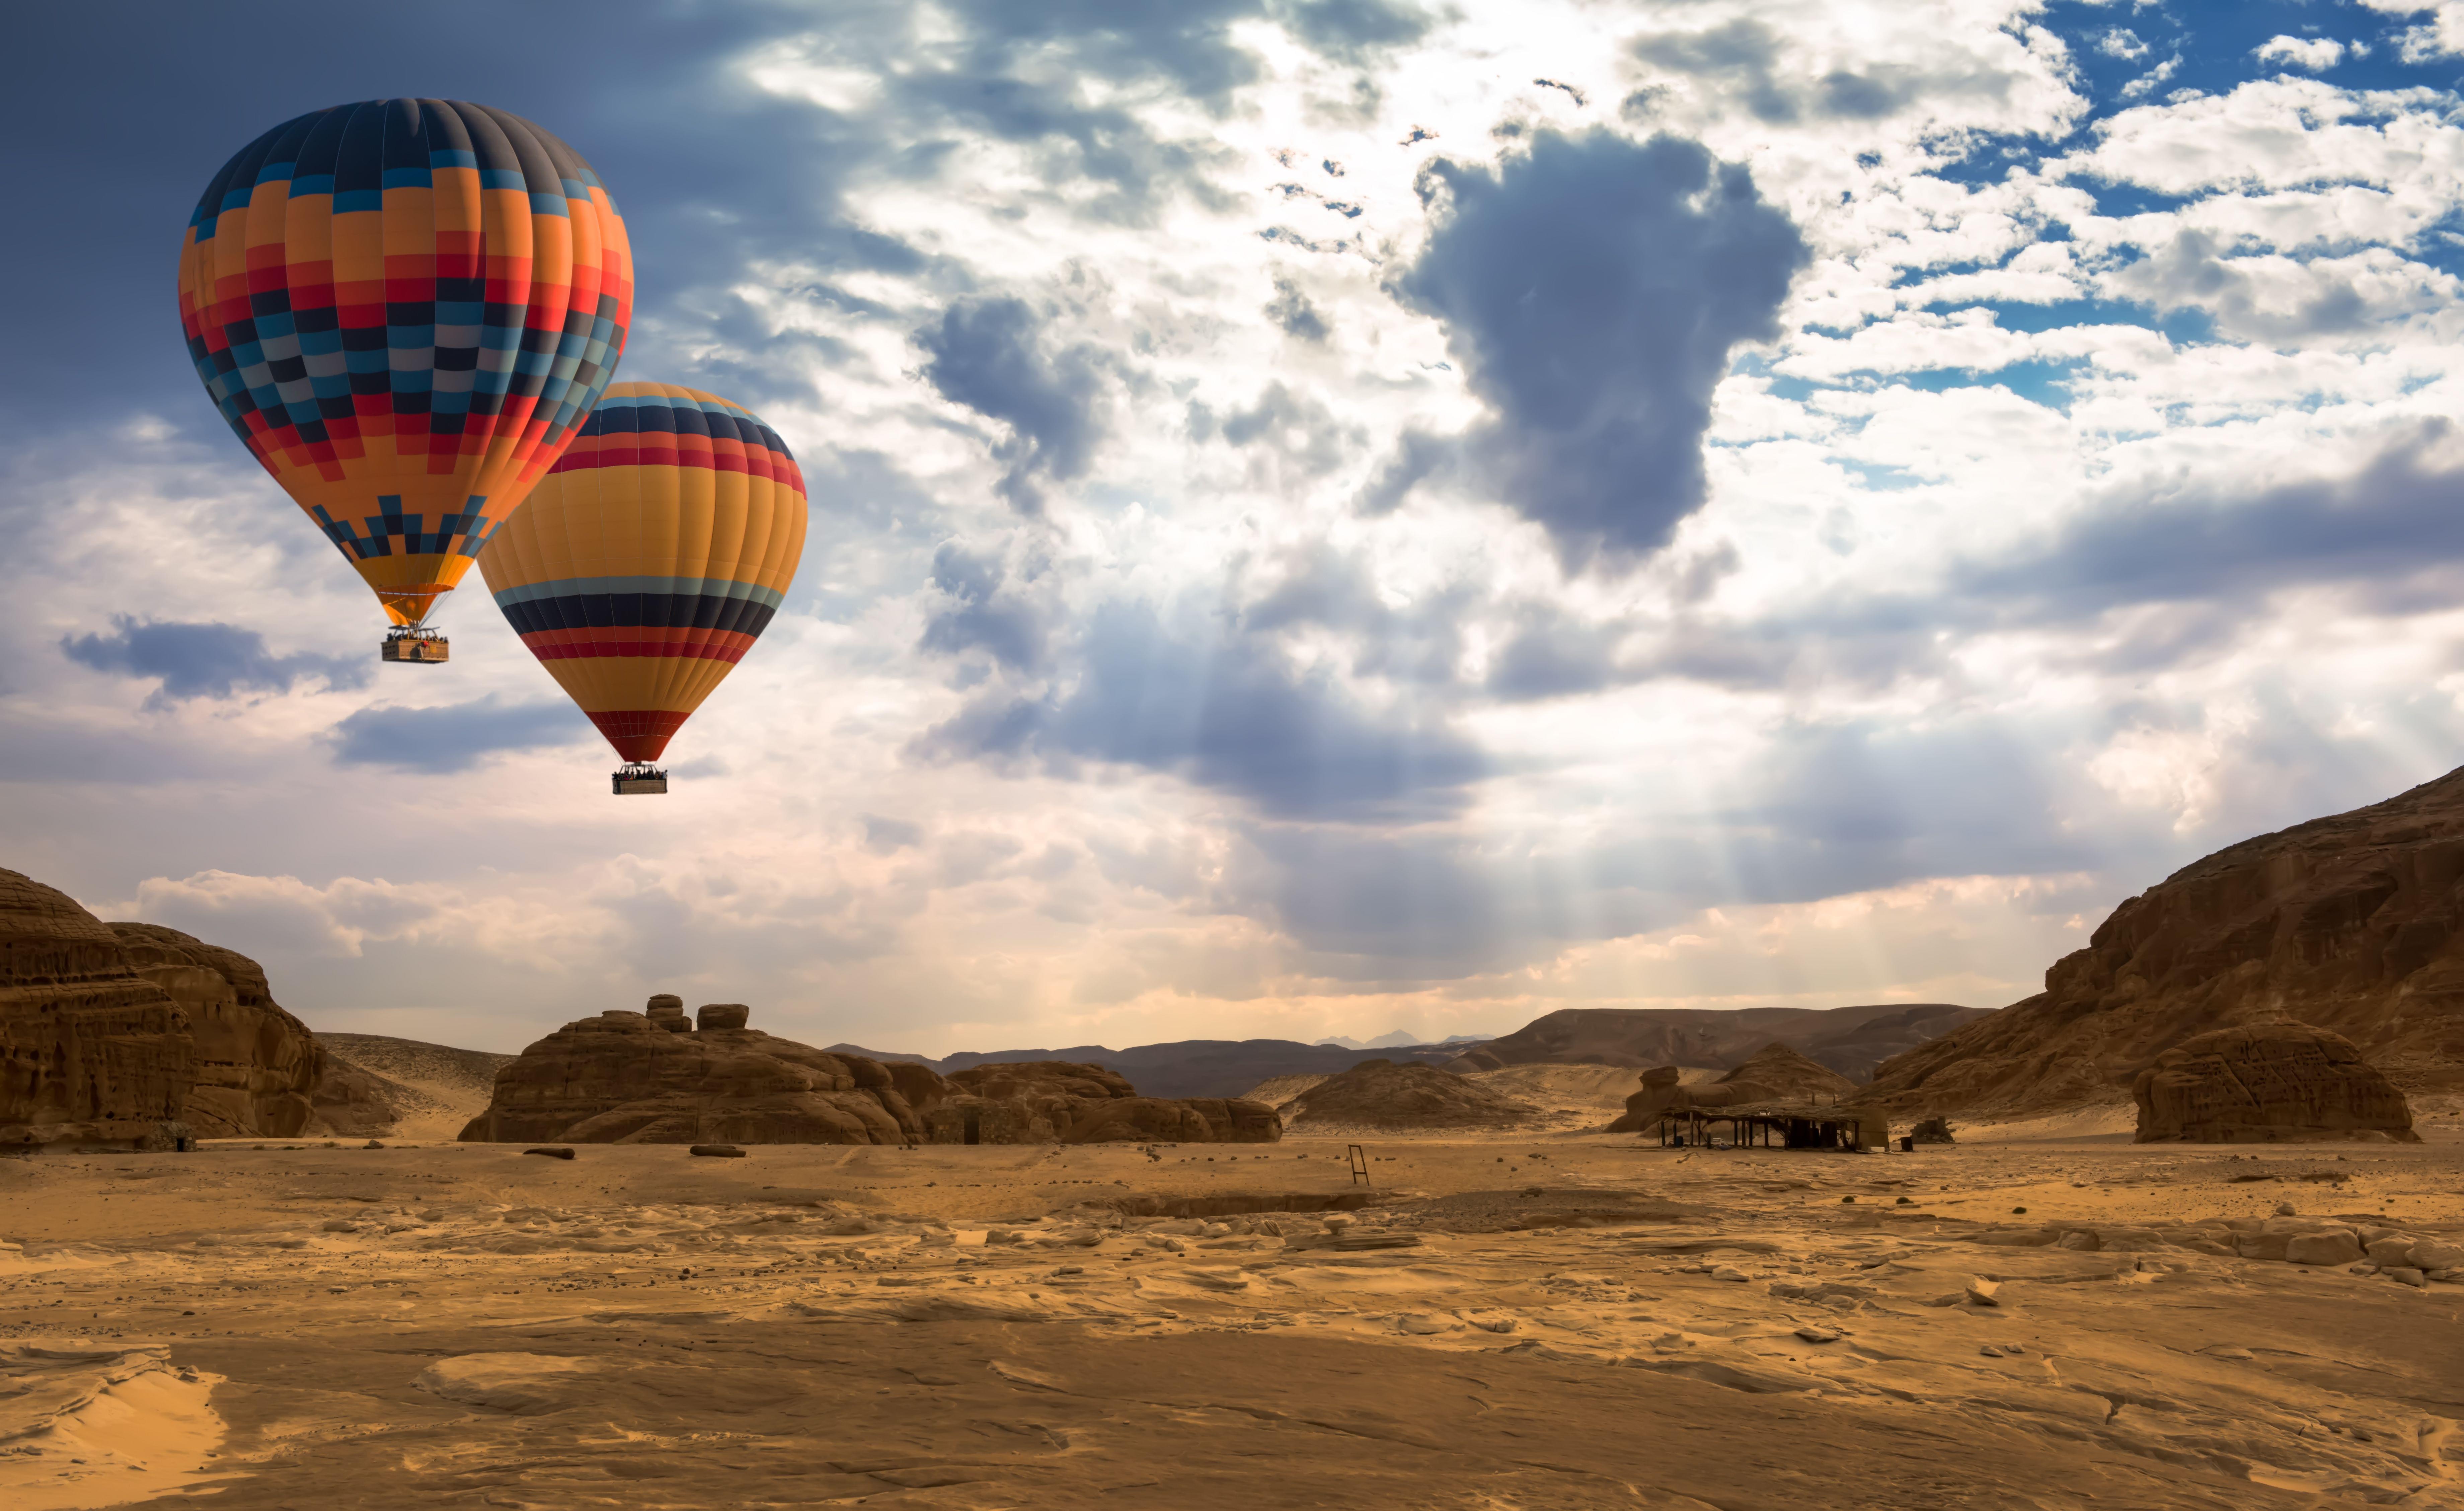 Hot Air Balloon in Dubai